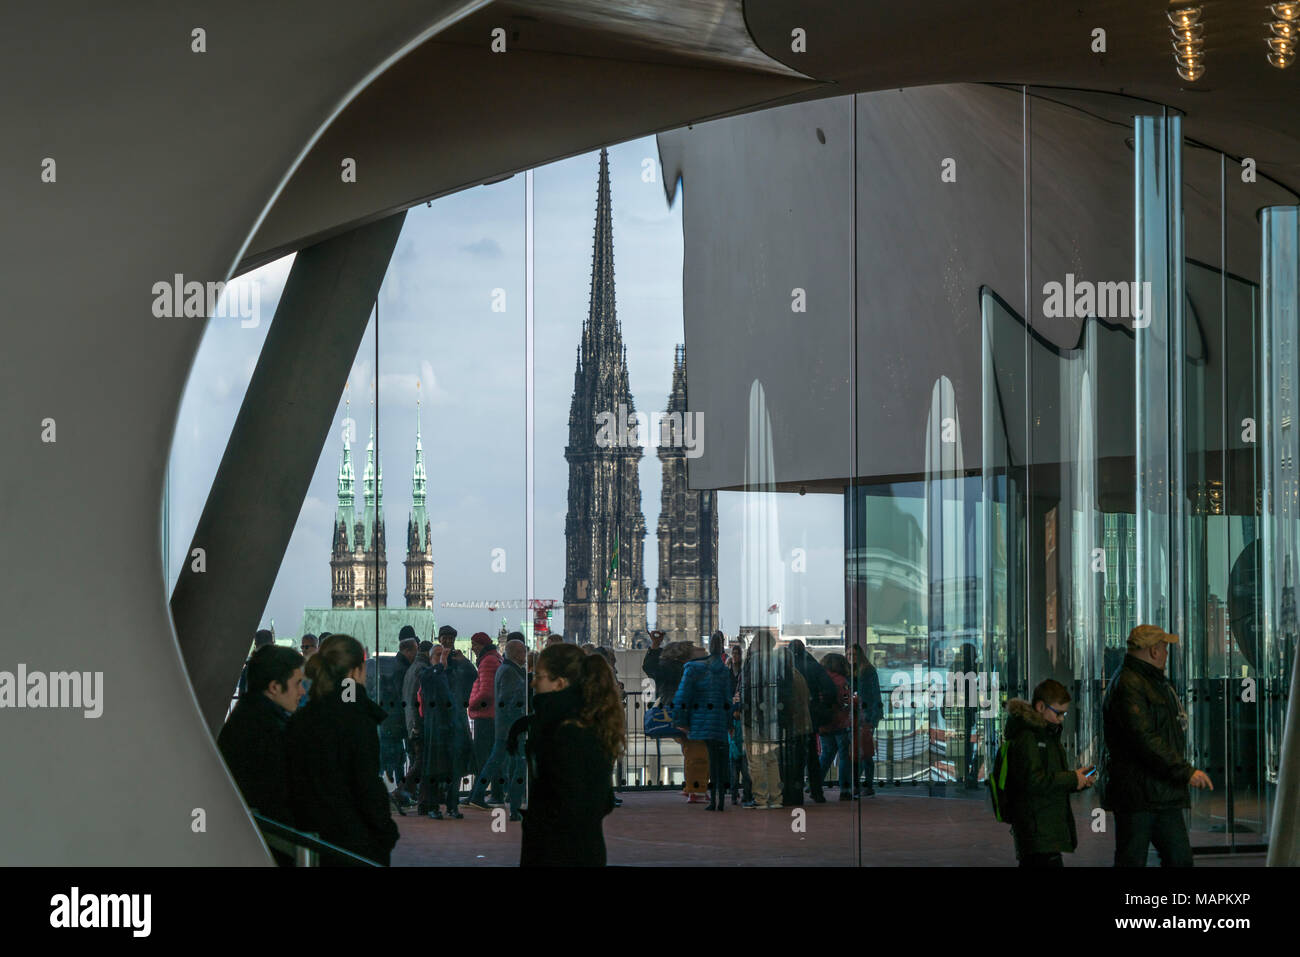 Besucher in der Elbphilharmonie mit Rathausturm und Mahnmal St. Nikolai,  Freie Hansestadt Hamburg, Deutschland |  Visitors at the Elbe Philharmonic H Stock Photo